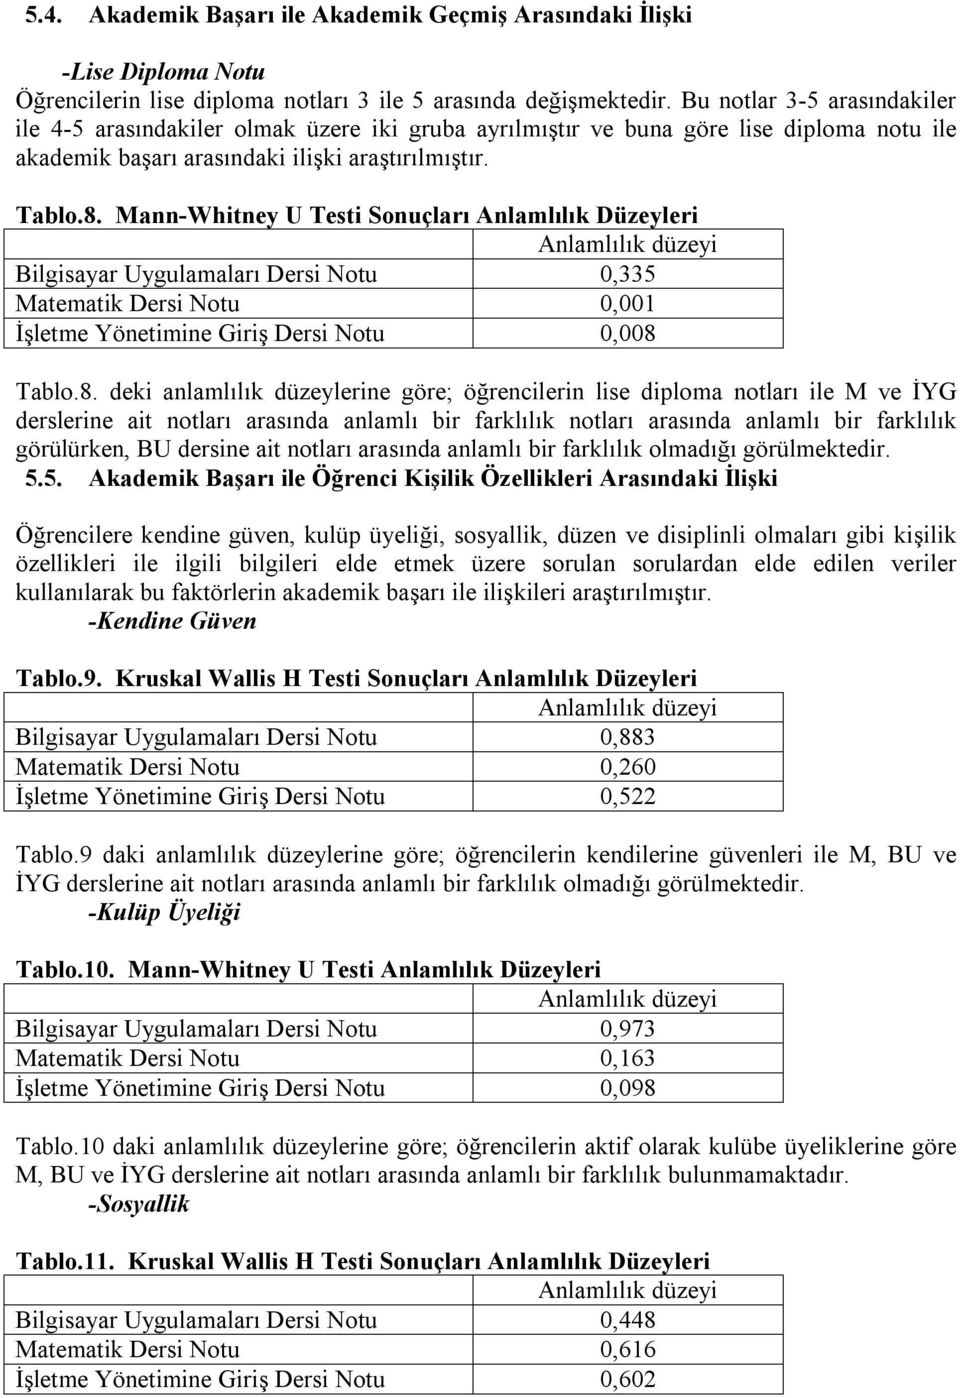 Mann-Whitney U Testi Sonuçları Anlamlılık Düzeyleri Bilgisayar Uygulamaları Dersi Notu 0,335 Matematik Dersi Notu 0,001 İşletme Yönetimine Giriş Dersi Notu 0,008 